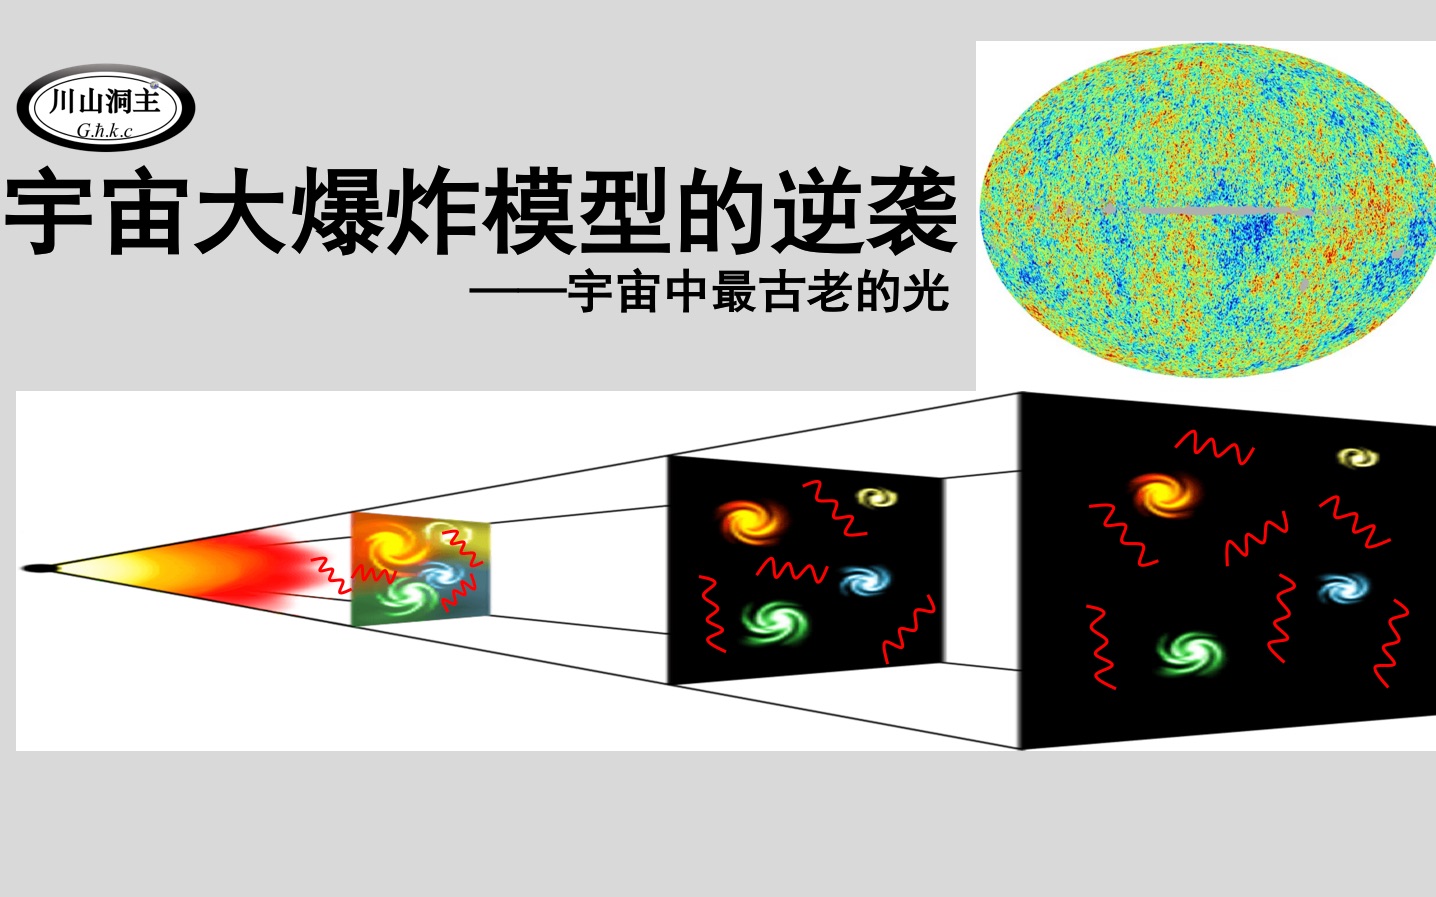 宇宙大爆炸模型示意图图片